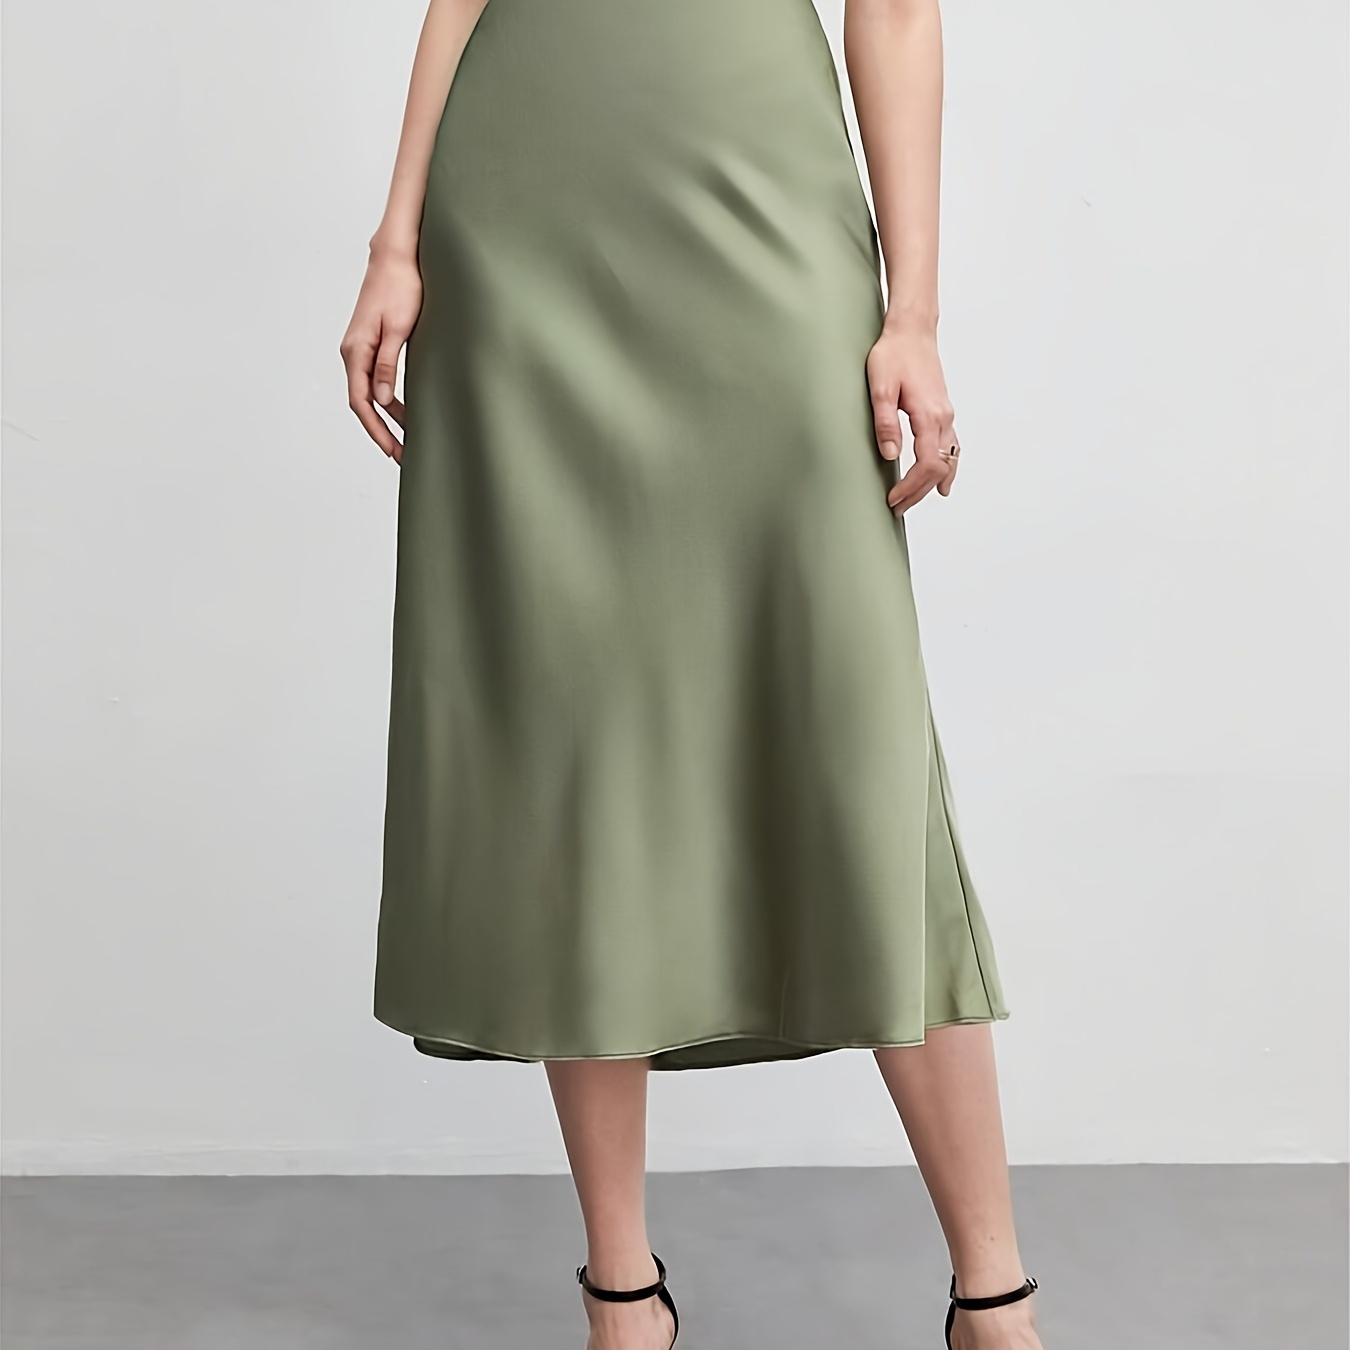 

Solid Color Slim Midi Skirt, Elegant High Waist Skirt For Spring & Summer, Women's Clothing